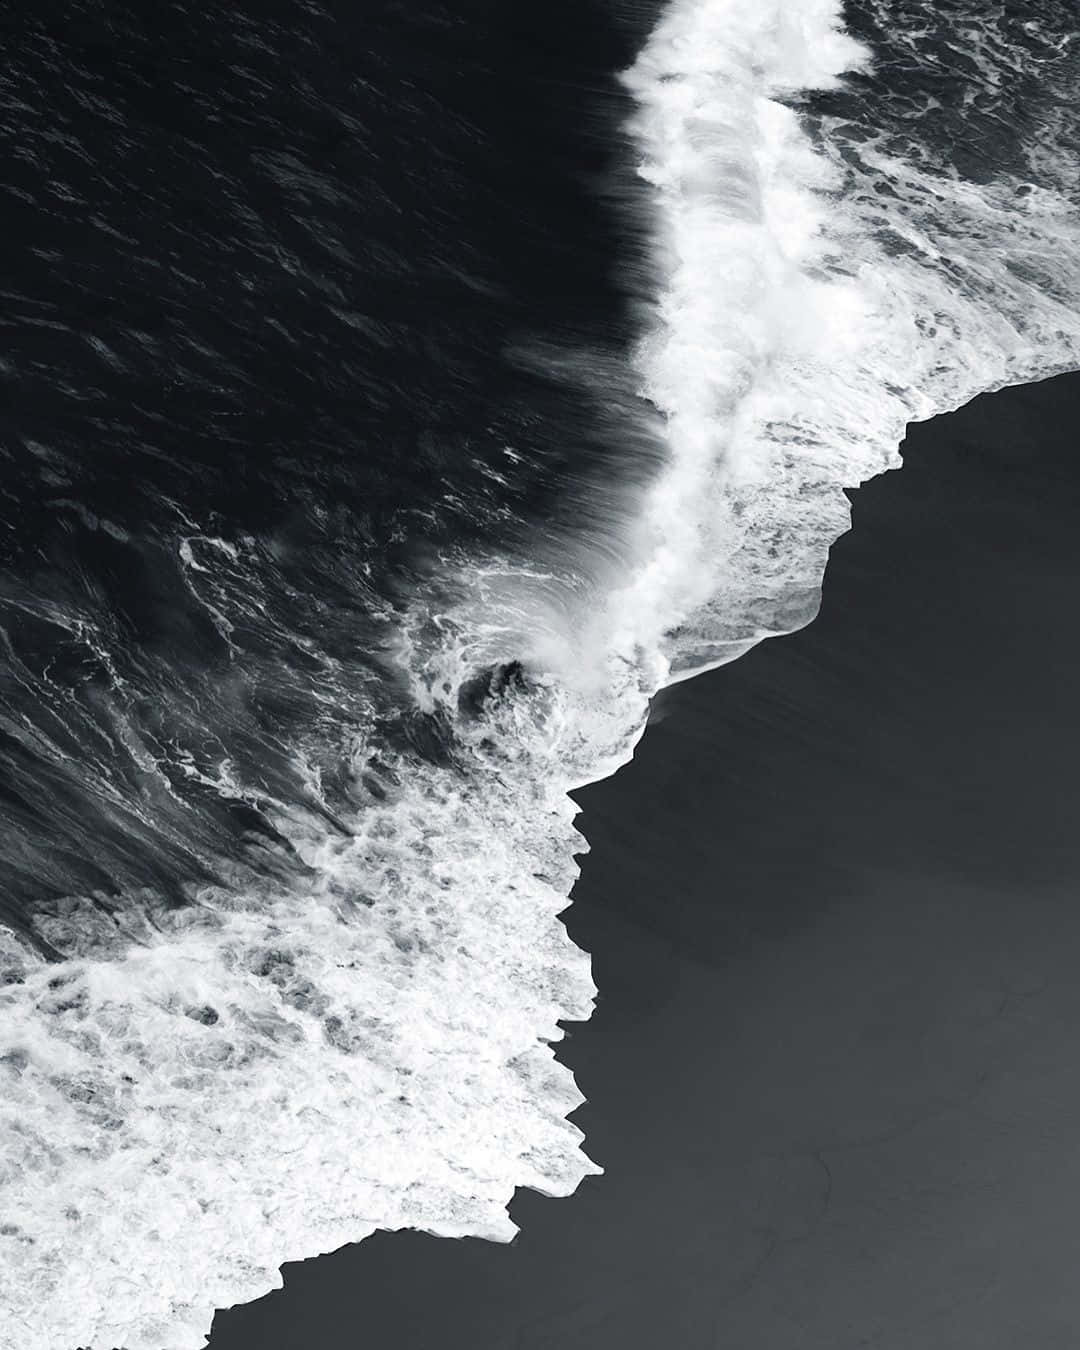 Black and white ocean waves crashing Wallpaper